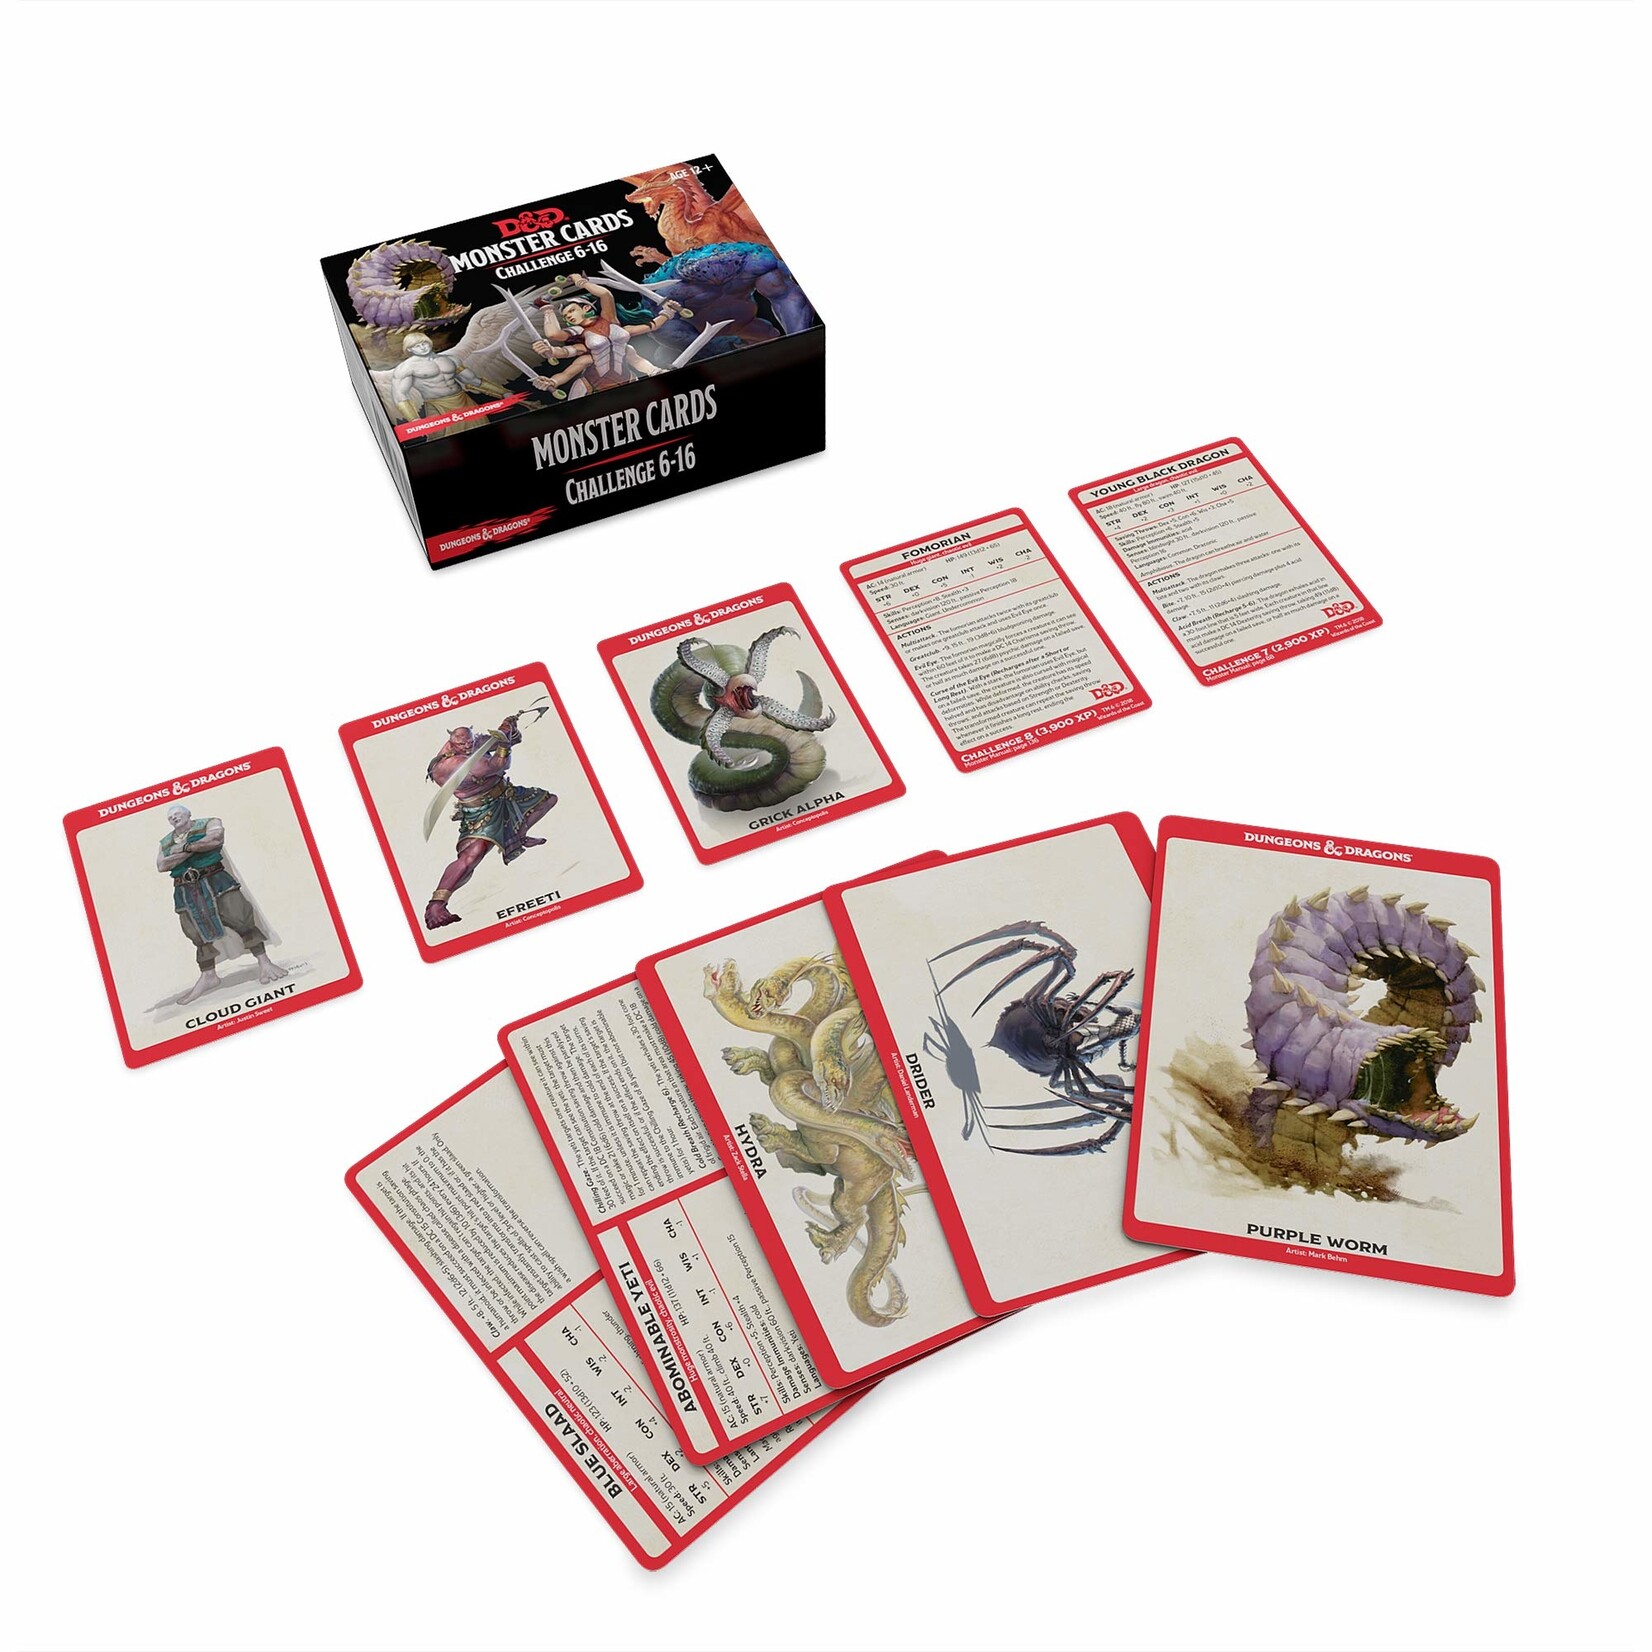 Gale Force Nine D&D: Monster Cards - Challenge Cards 6-16